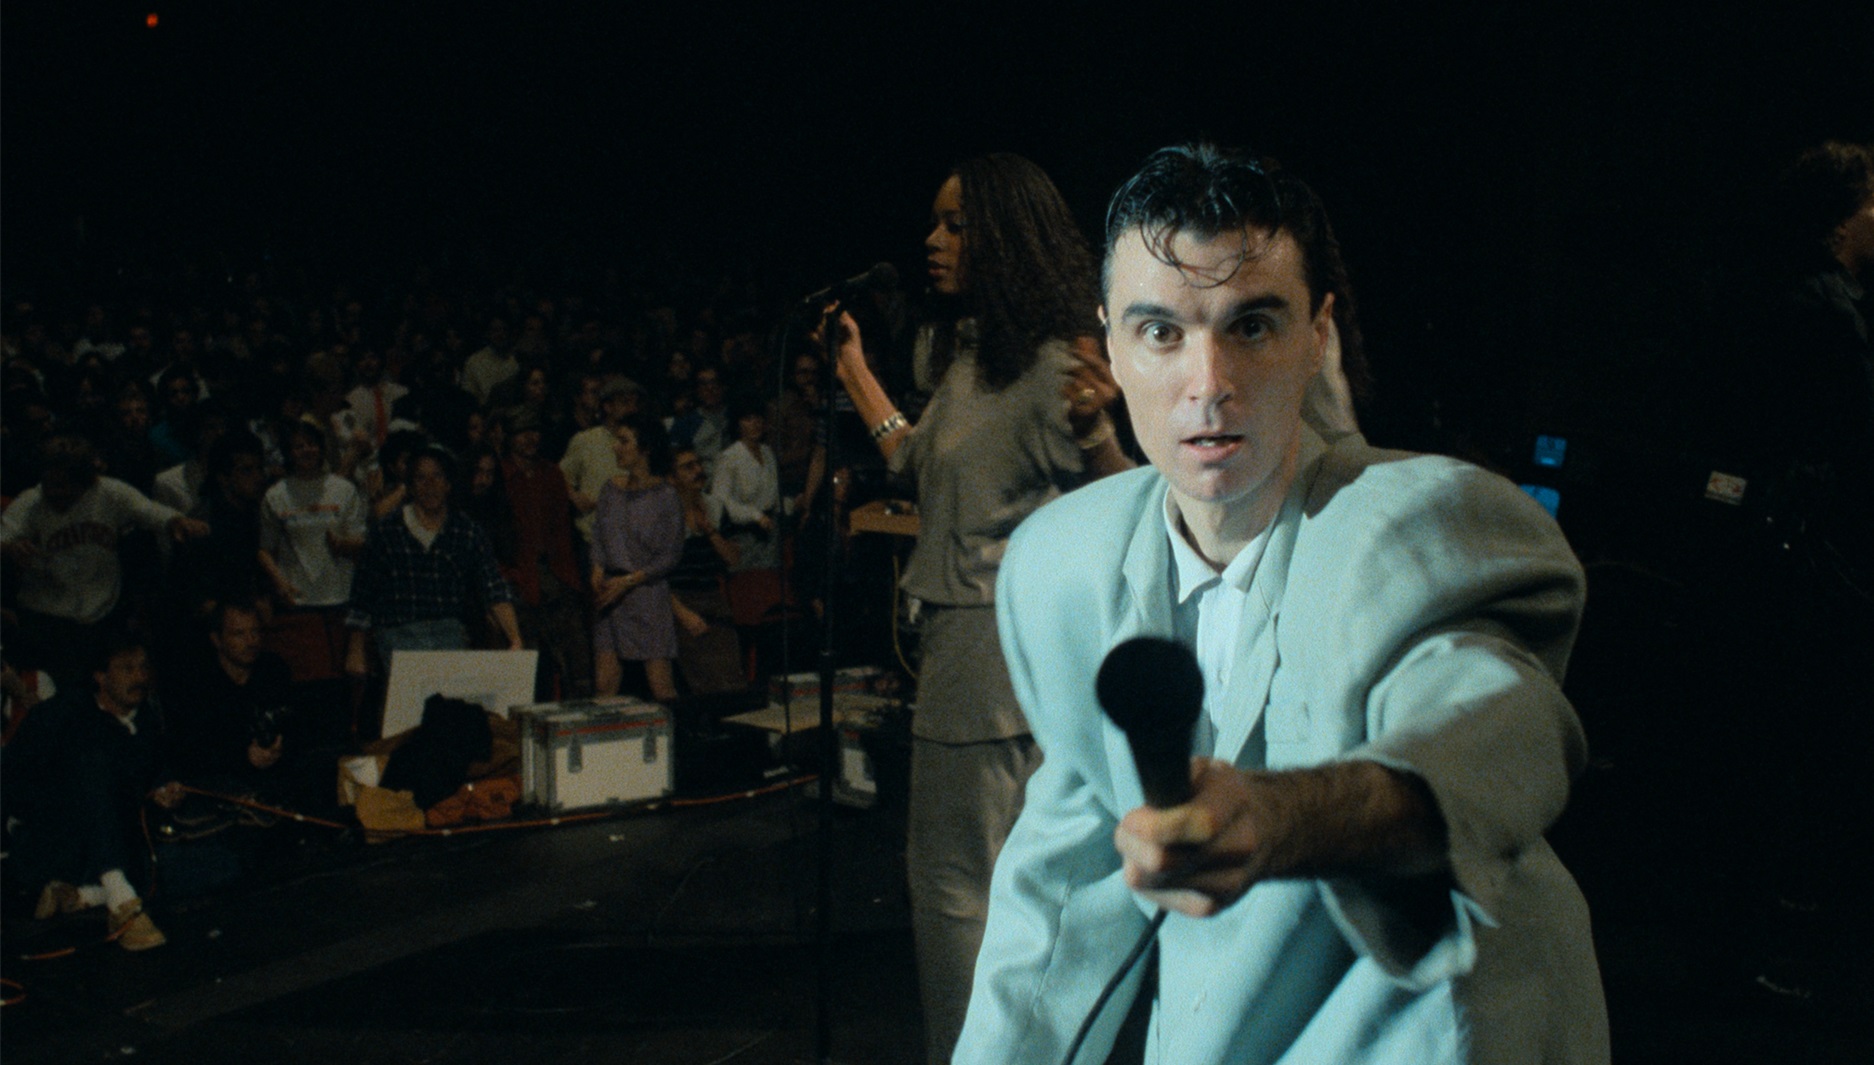 Zanger David Byrne heeft een wit pak aan en wijst met zijn microfoon naar de fotograaf